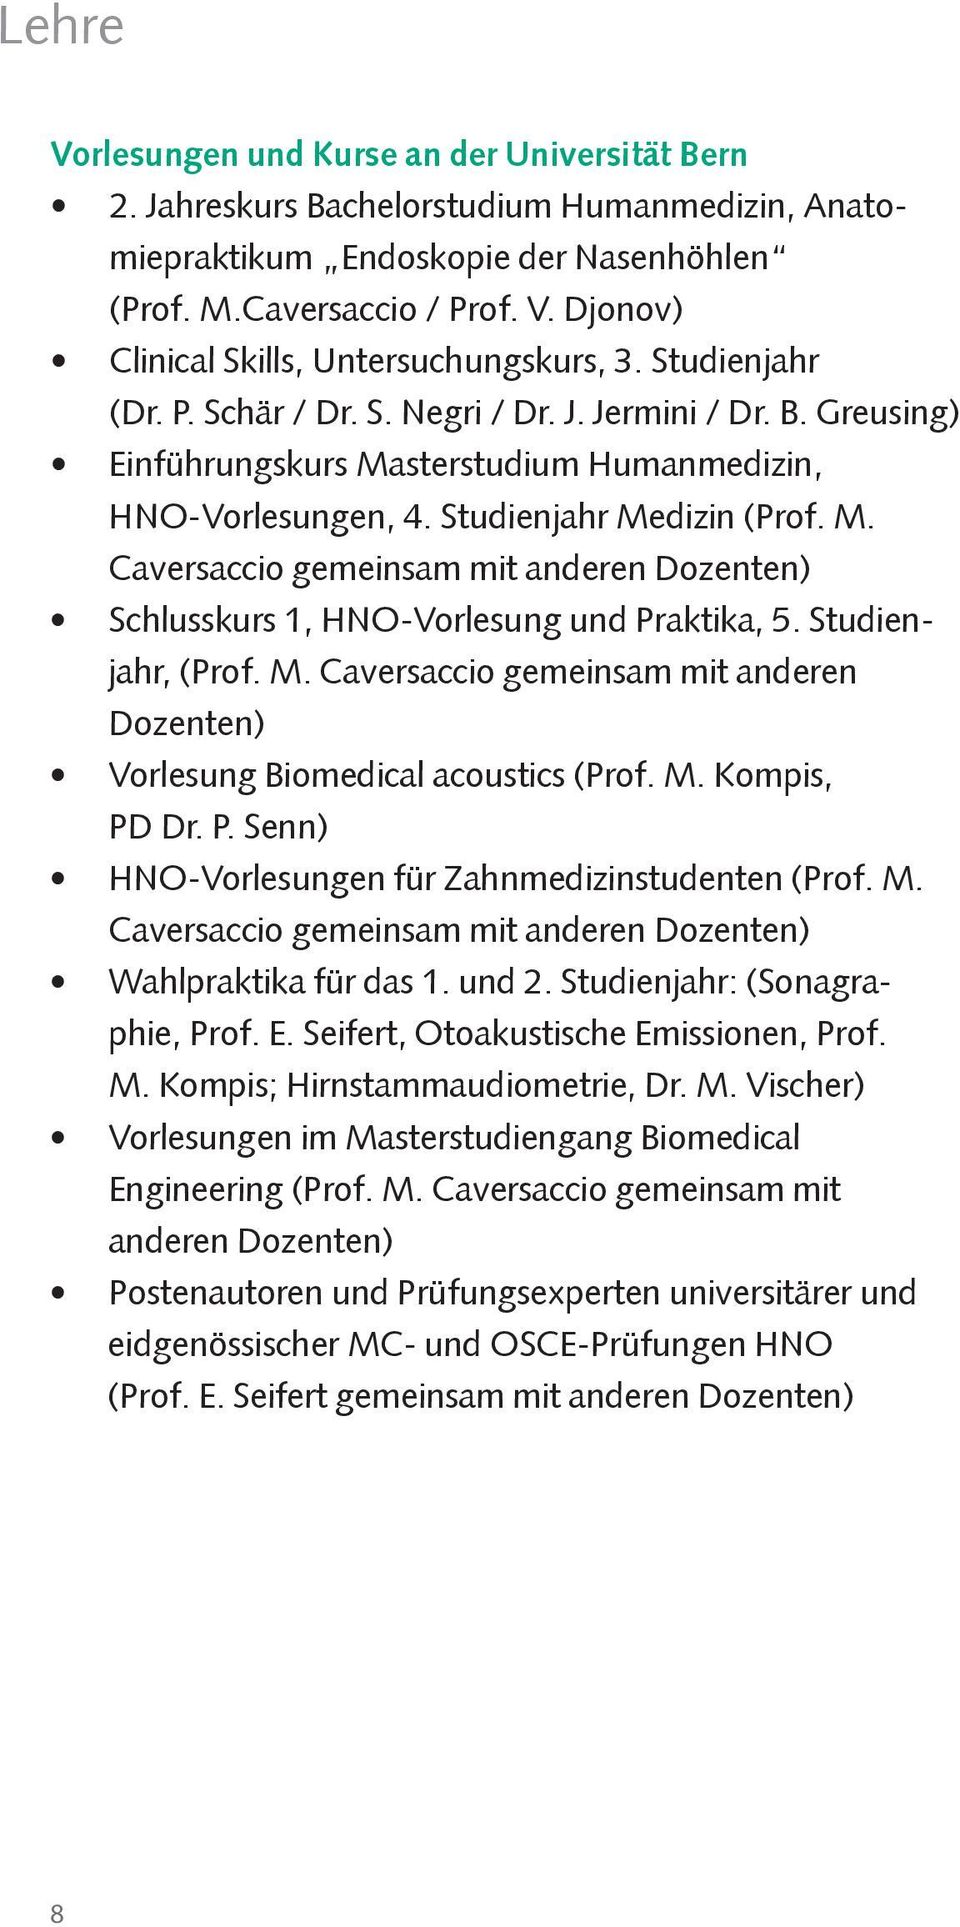 Studienjahr, (Prof. M. Caversaccio gemeinsam mit anderen Dozenten) Vorlesung Biomedical acoustics (Prof. M. Kompis, PD Dr. P. Senn) HNO-Vorlesungen für Zahnmedizinstudenten (Prof. M. Caversaccio gemeinsam mit anderen Dozenten) Wahlpraktika für das 1.